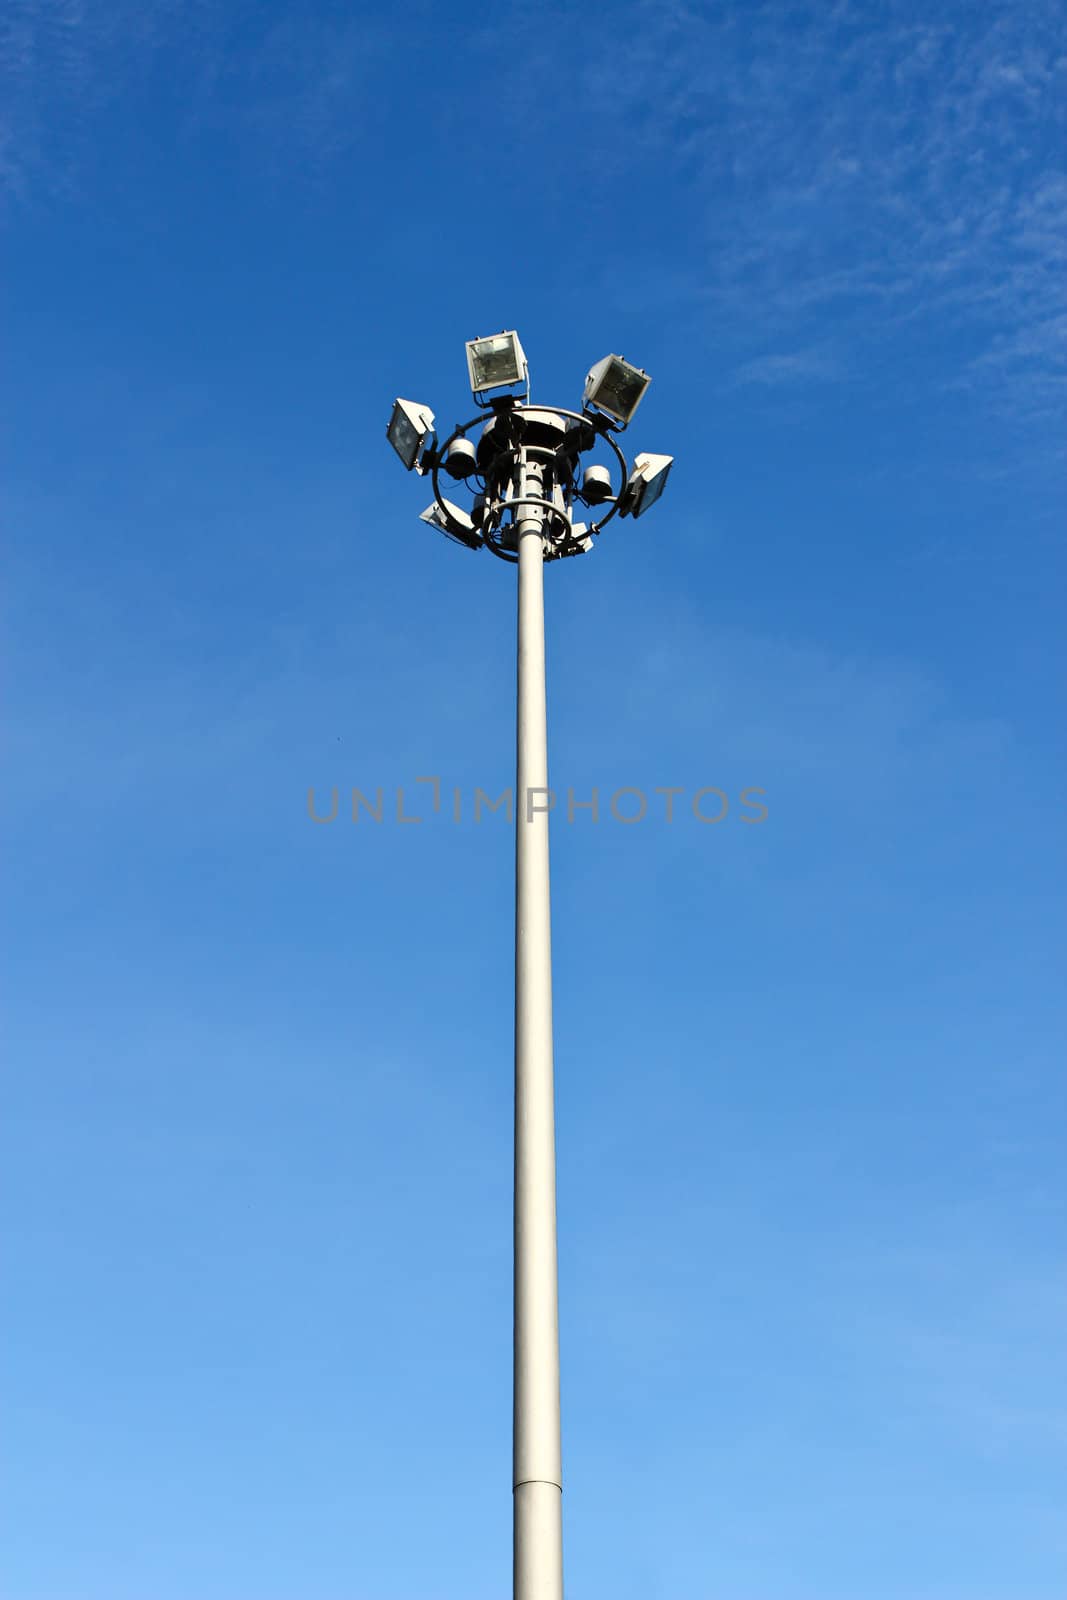 light pole on blusky background by bajita111122